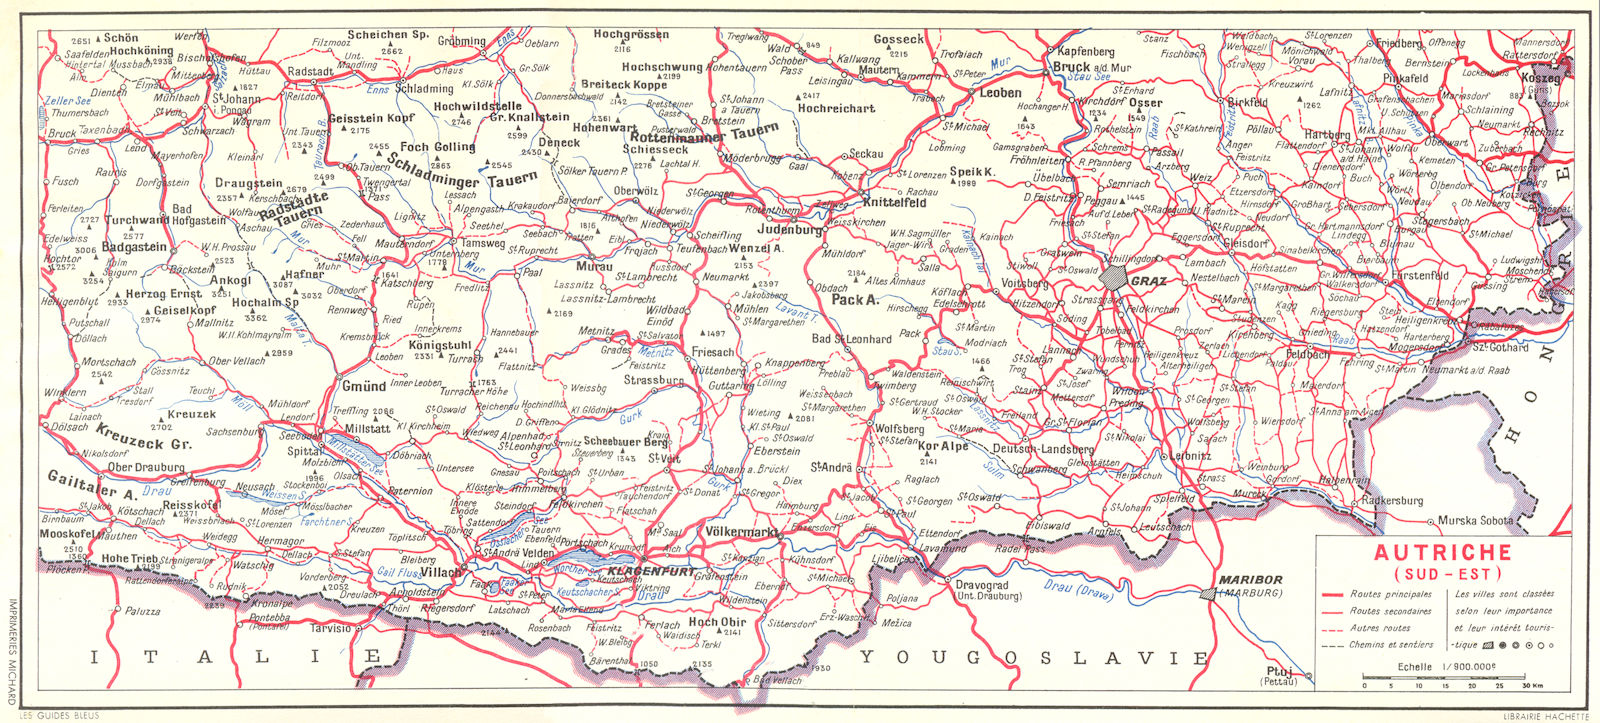 AUSTRIA. Tyrol Oriental. Autriche(Sud-Est) 1954 old vintage map plan chart